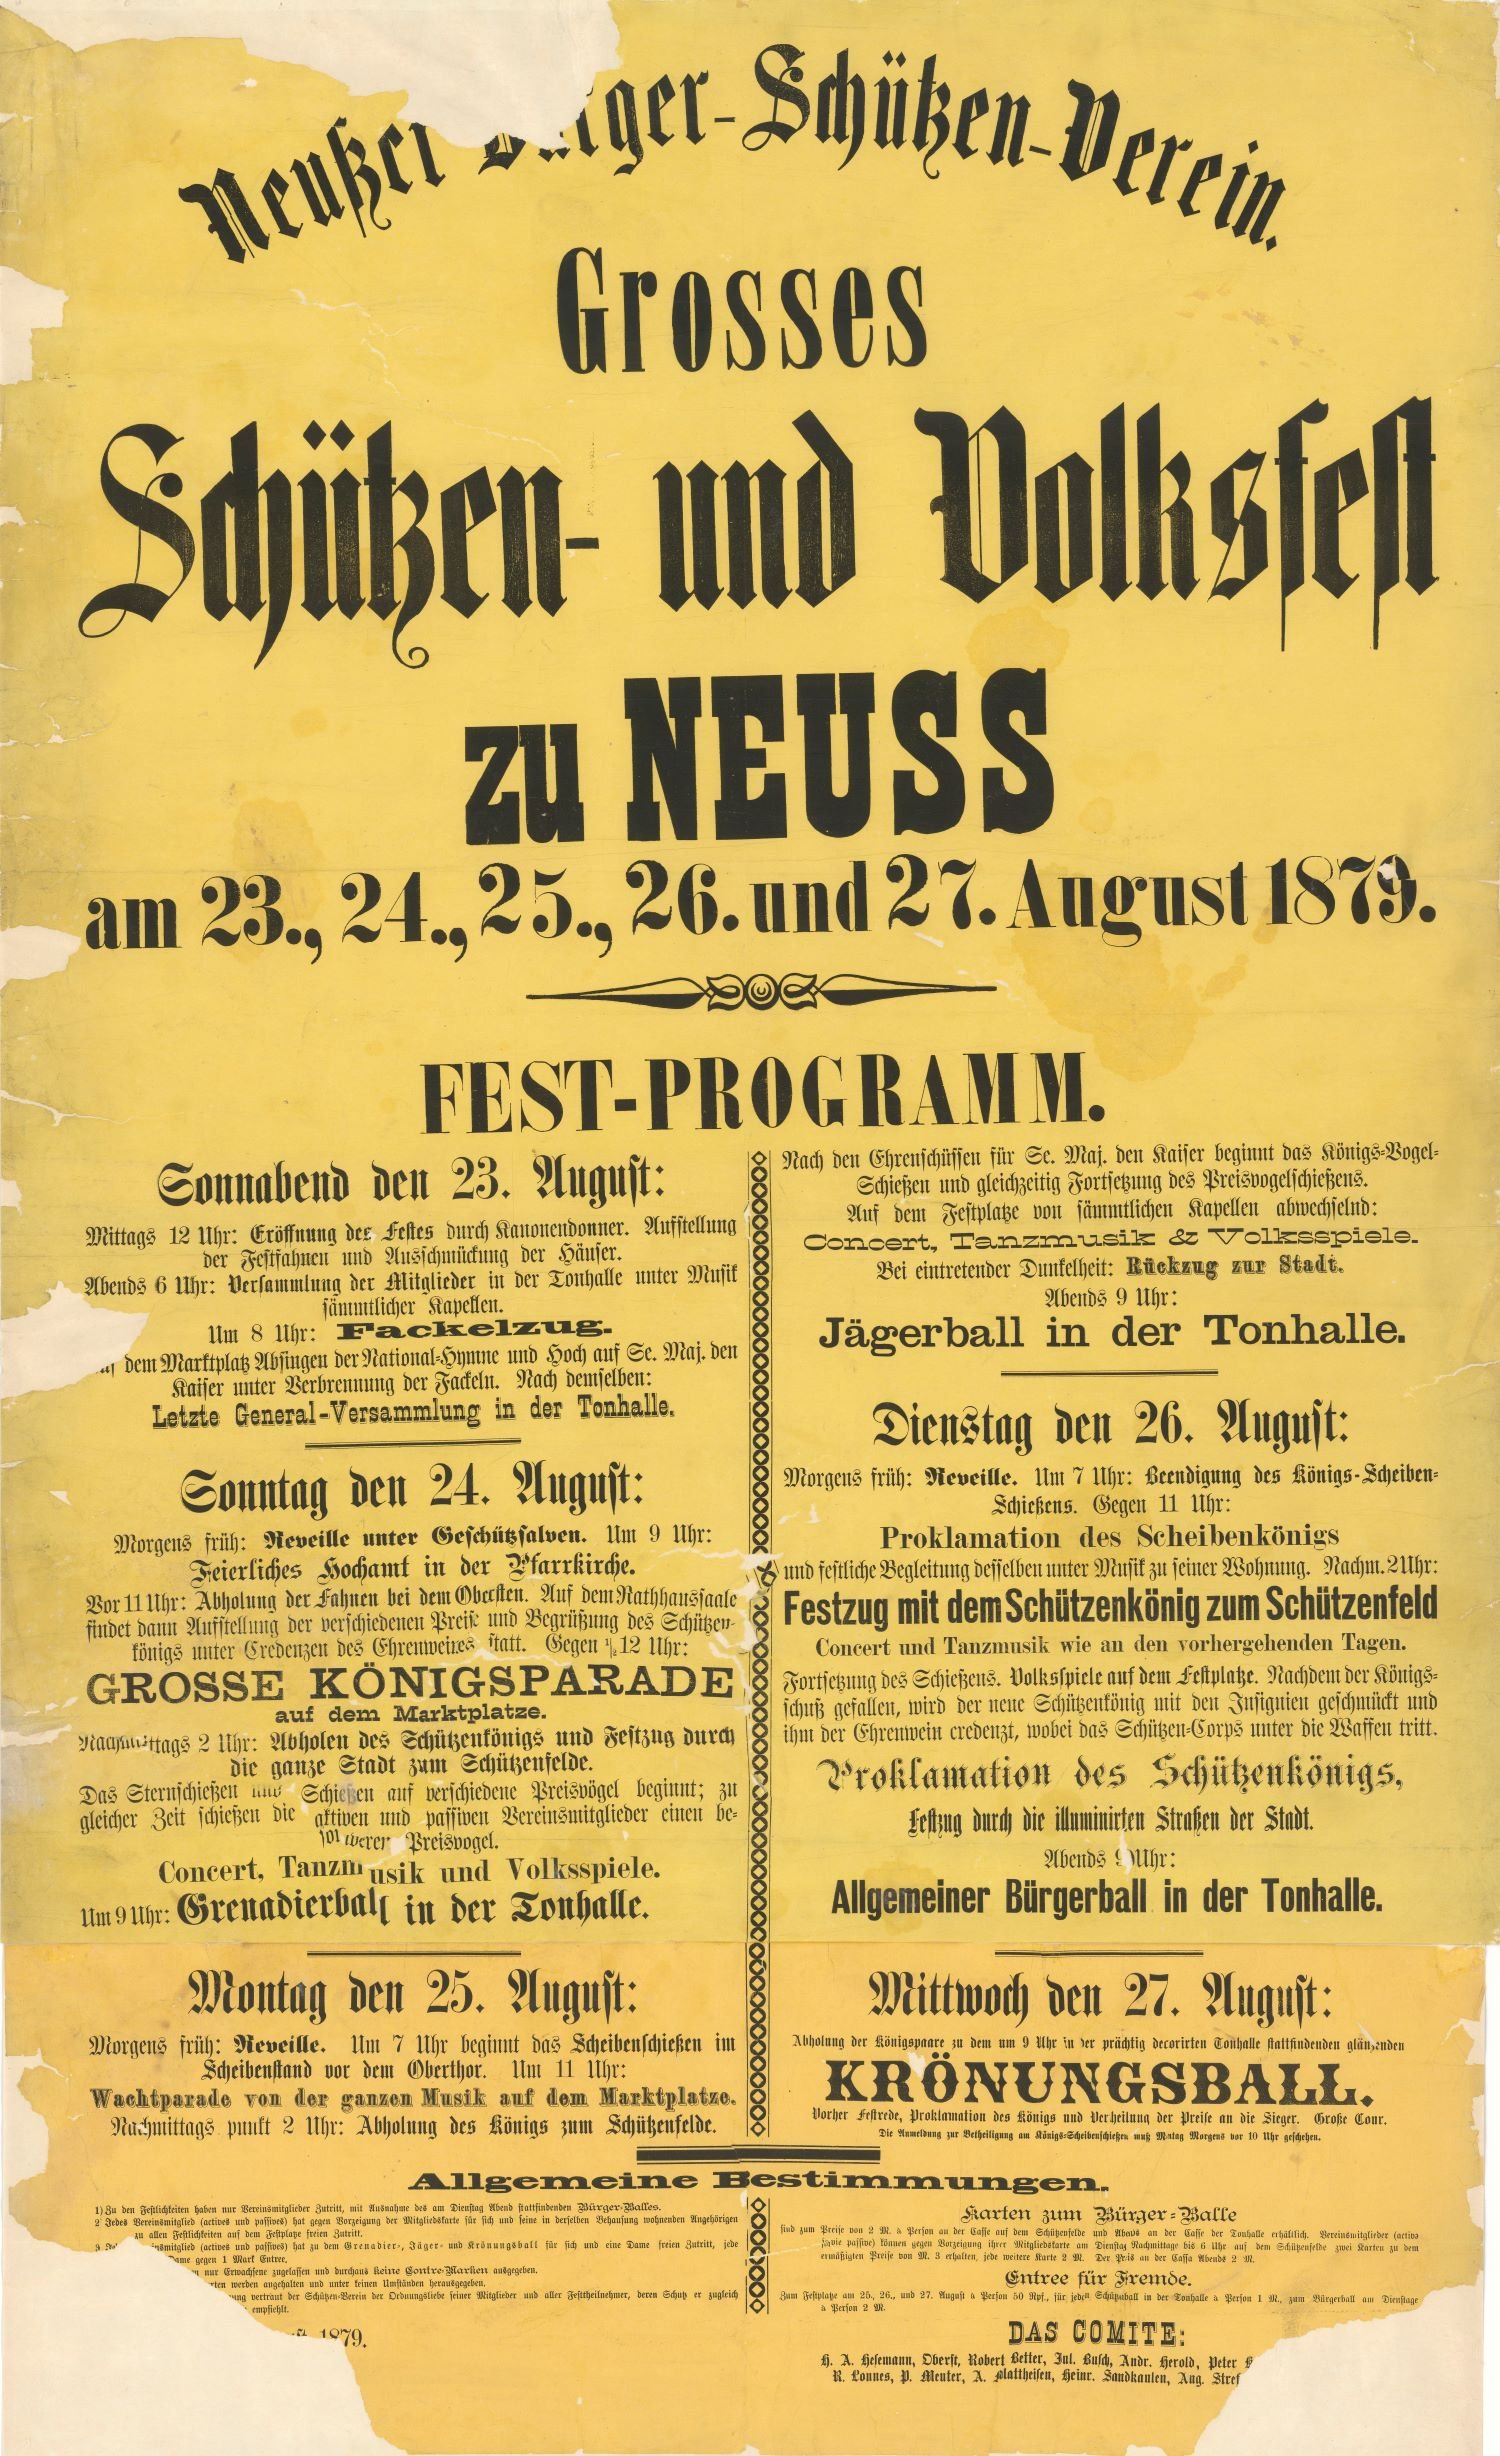 Festplakat Schützenfest Neuss 1879 (Rheinisches Schützenmuseum Neuss CC BY-NC-SA)